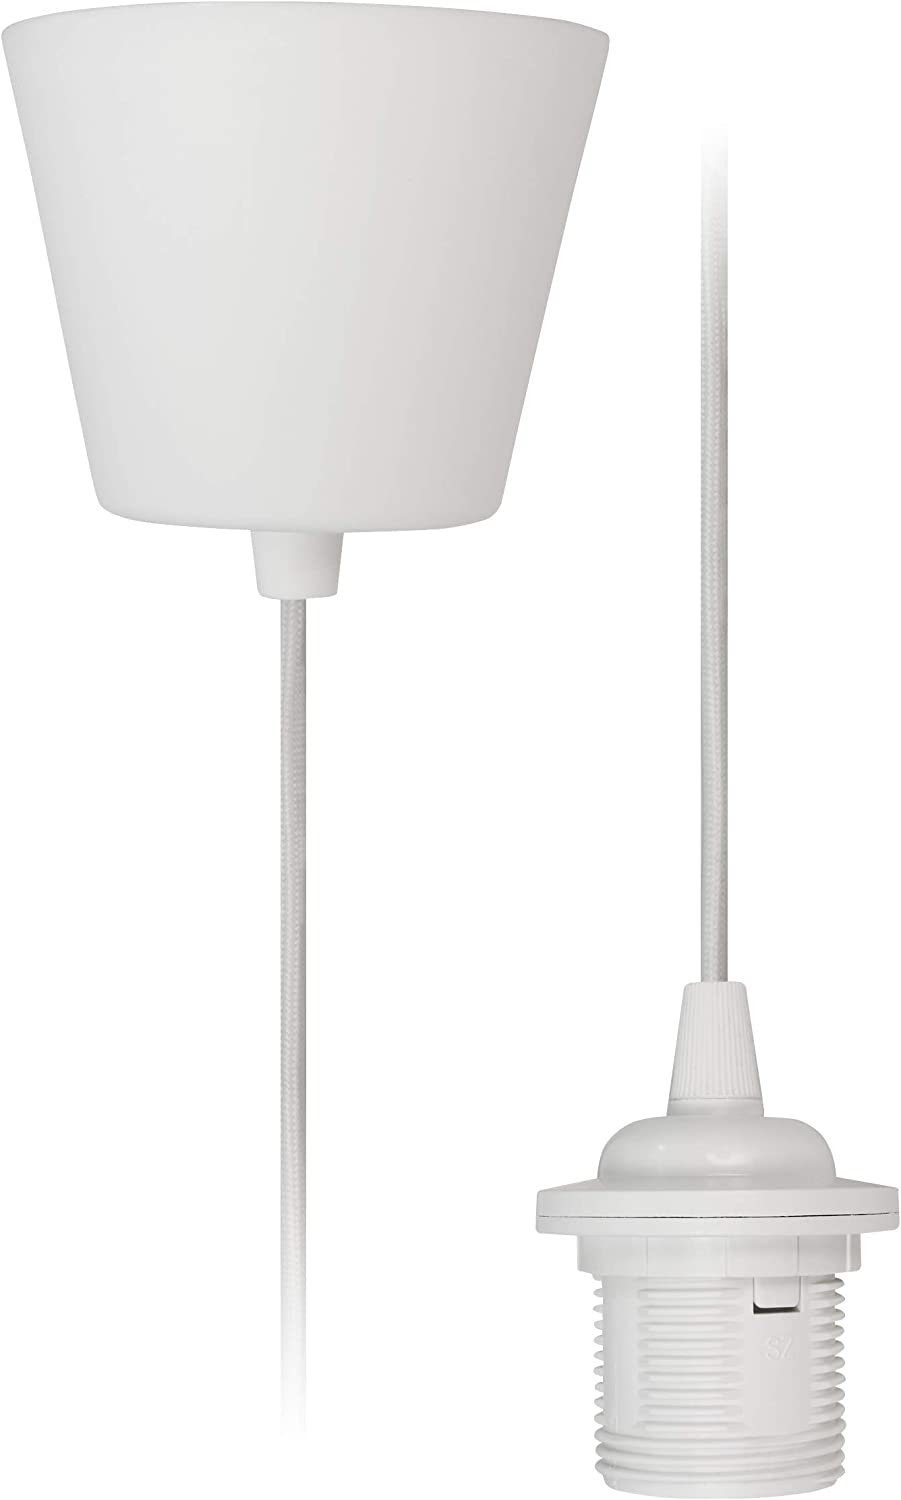 McShine Lichtschalter Lampenaufhängung McShine, E27 Fassung, weiß, 230V, 1,2m Kabel (Textilk